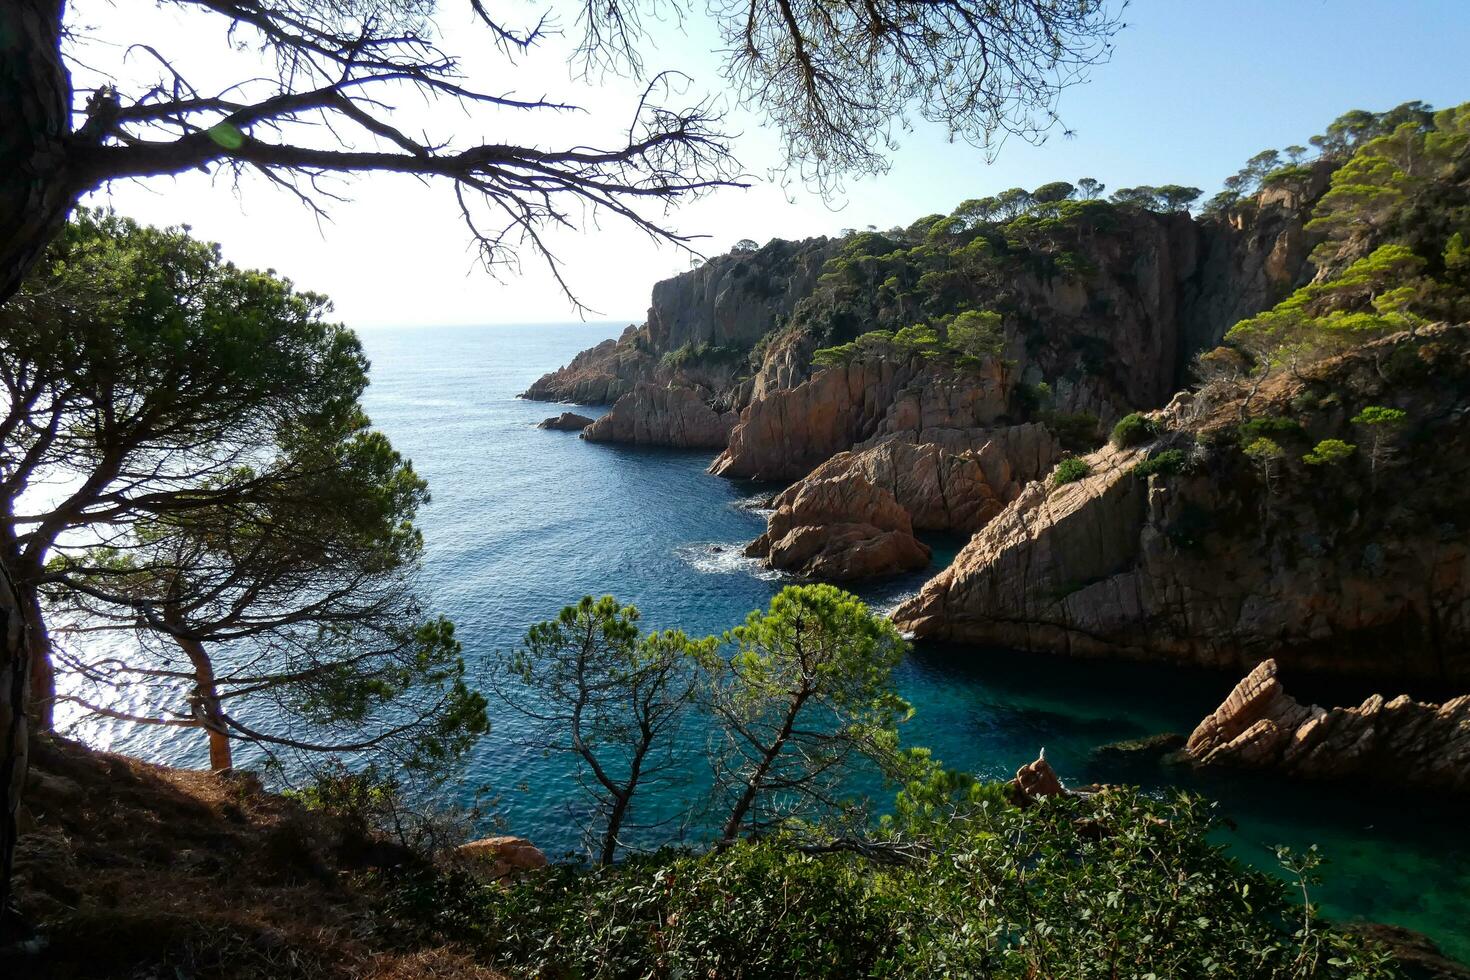 felsen und meer an der katalanischen costa brava, mittelmeer, blaues meer foto